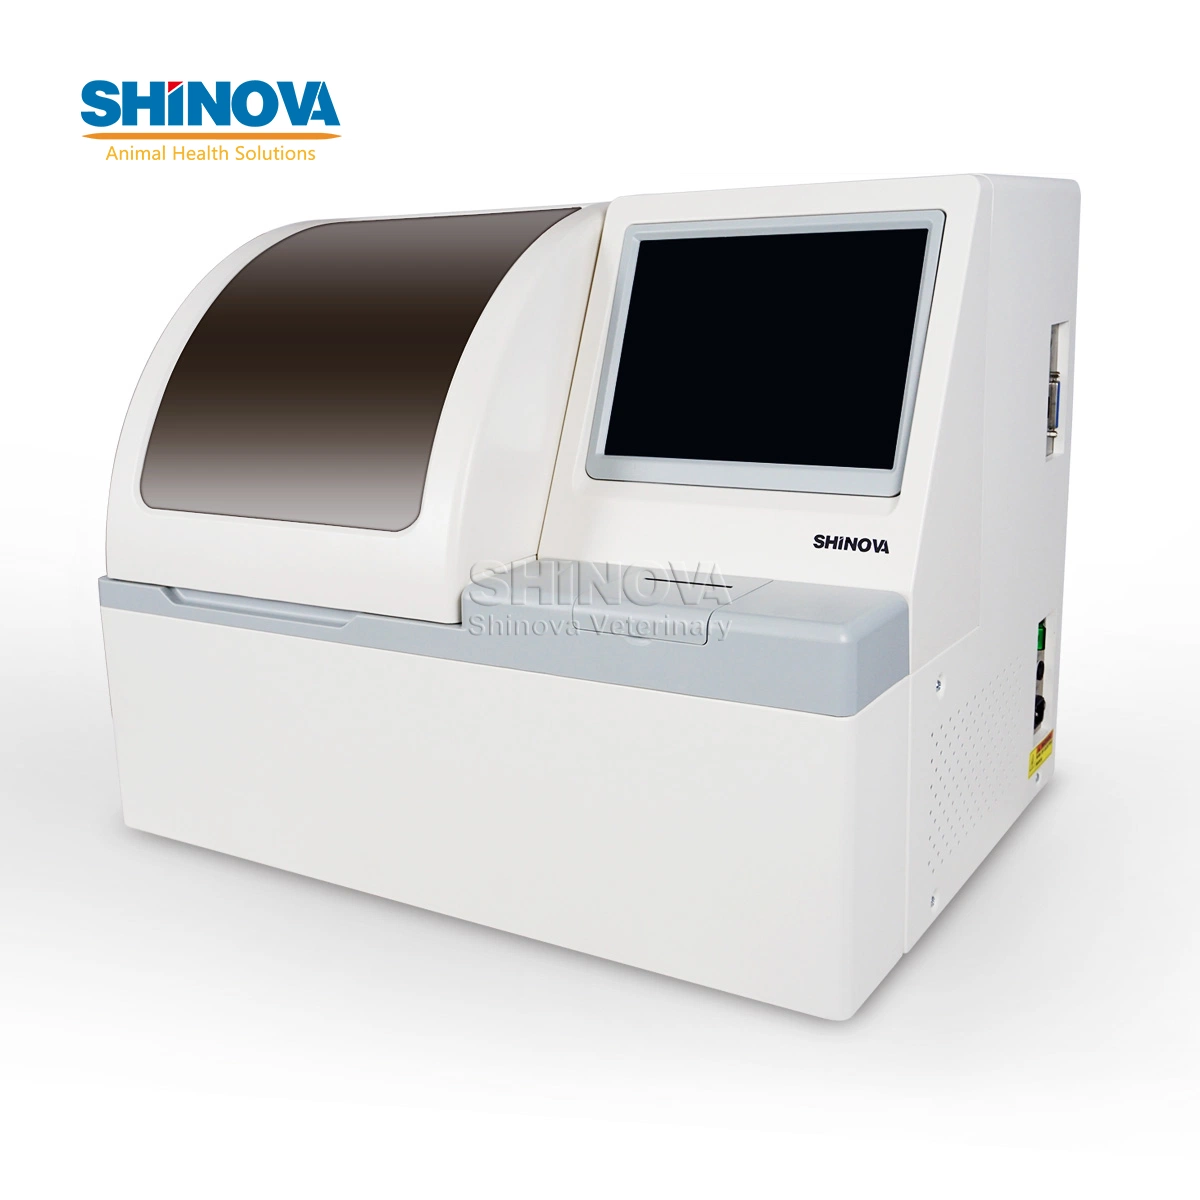 Shinova Analyseur de chimie entièrement automatique multilingue Équipement de test sanguin Analyseur de biochimie vétérinaire Équipement de laboratoire pour utilisation en clinique vétérinaire.